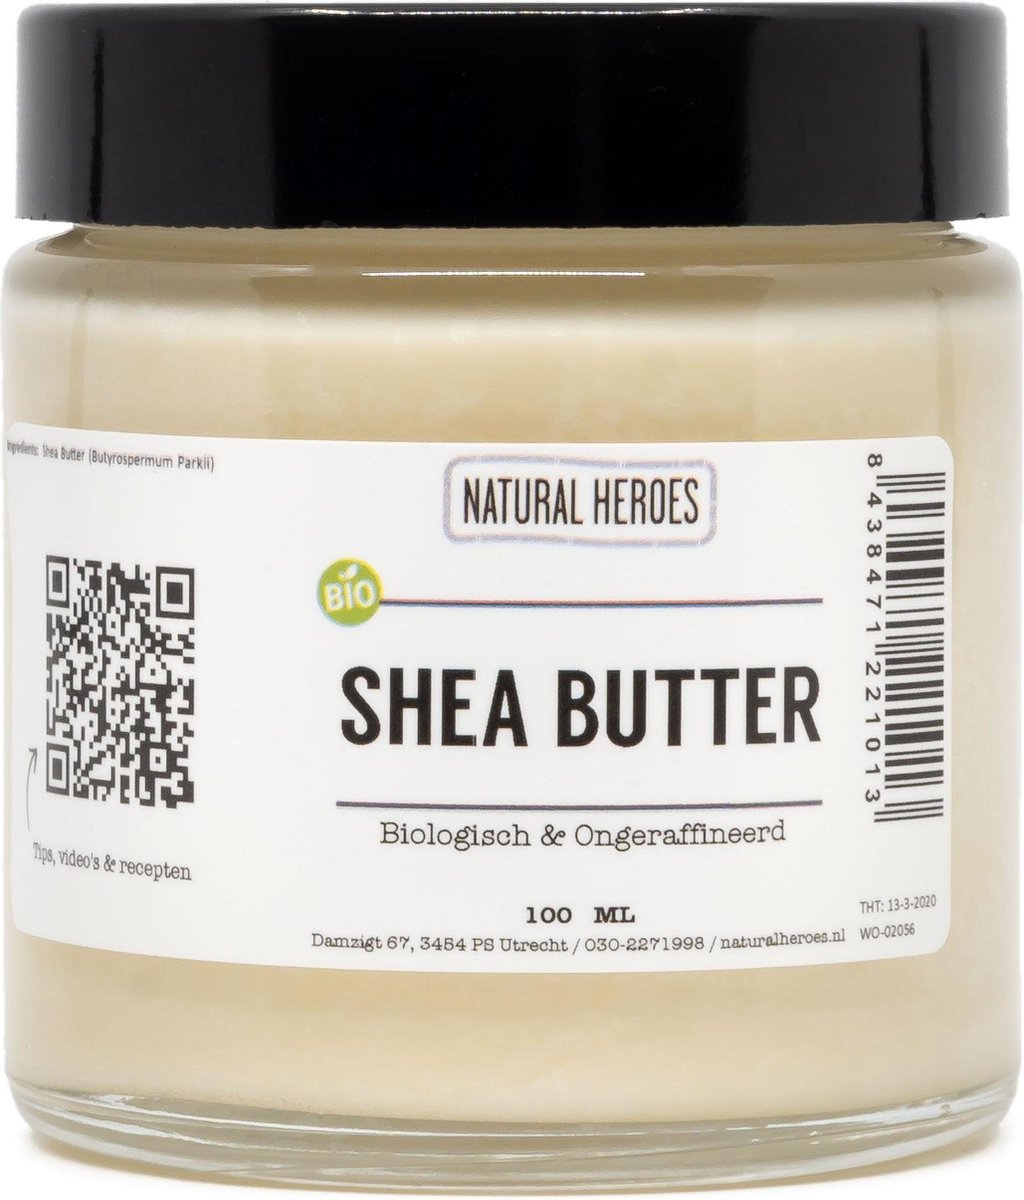 Shea Butter (Biologisch & Ongeraffineerd) 100 ml | bol.com